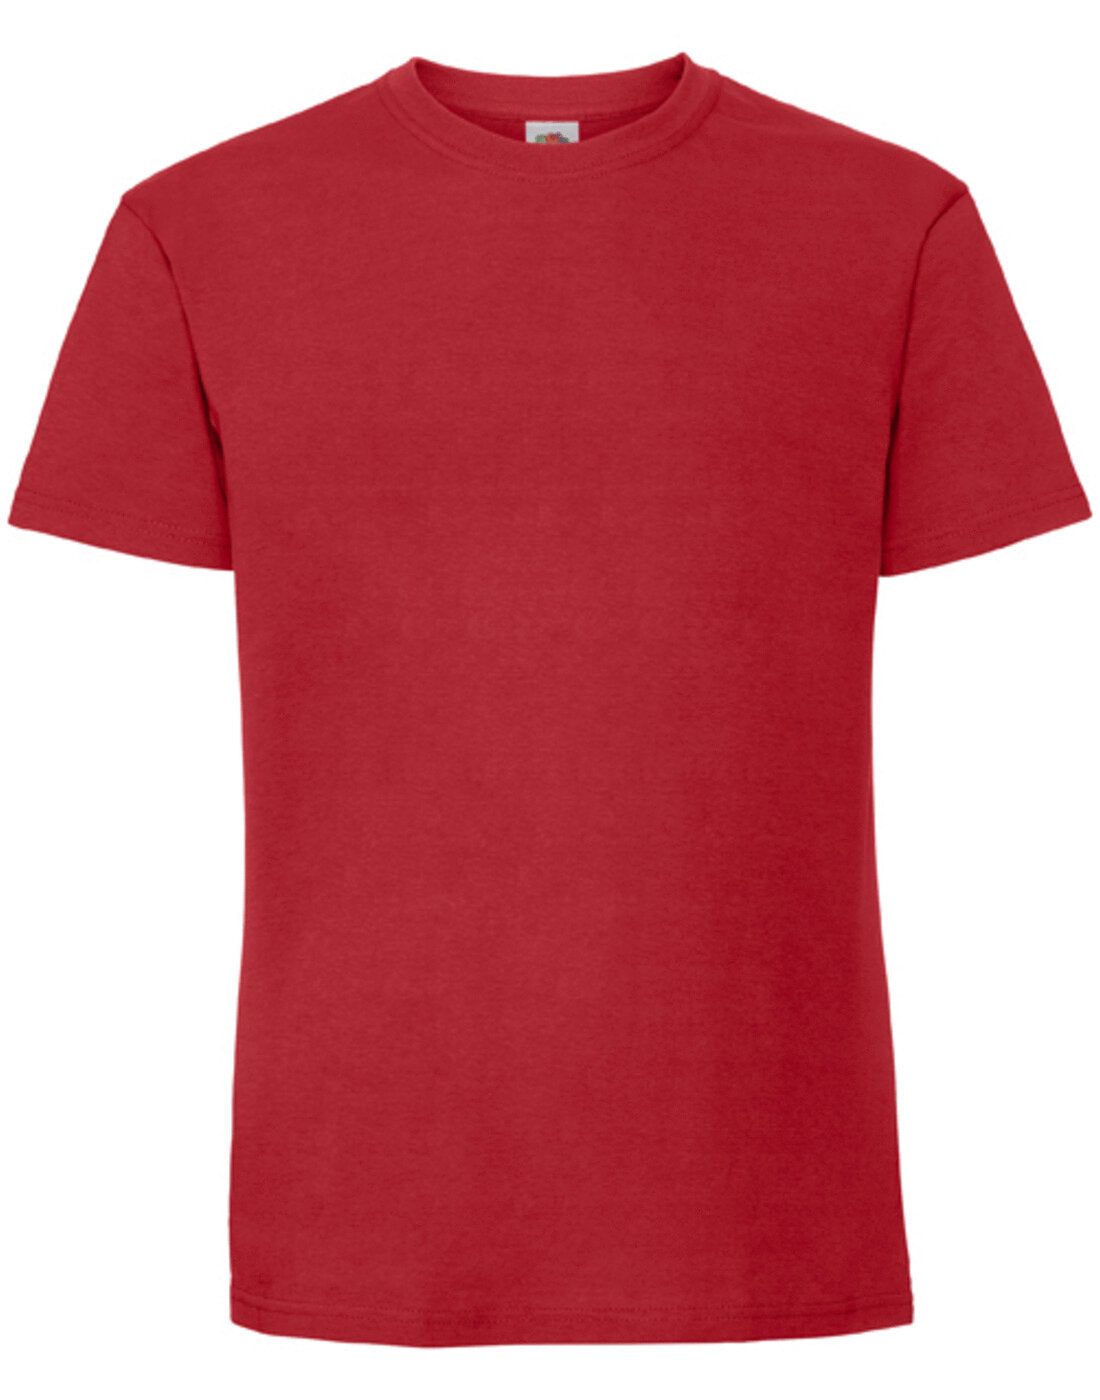 Fruit of the Loom Mens Ringspun Premium T-Shirt - Red